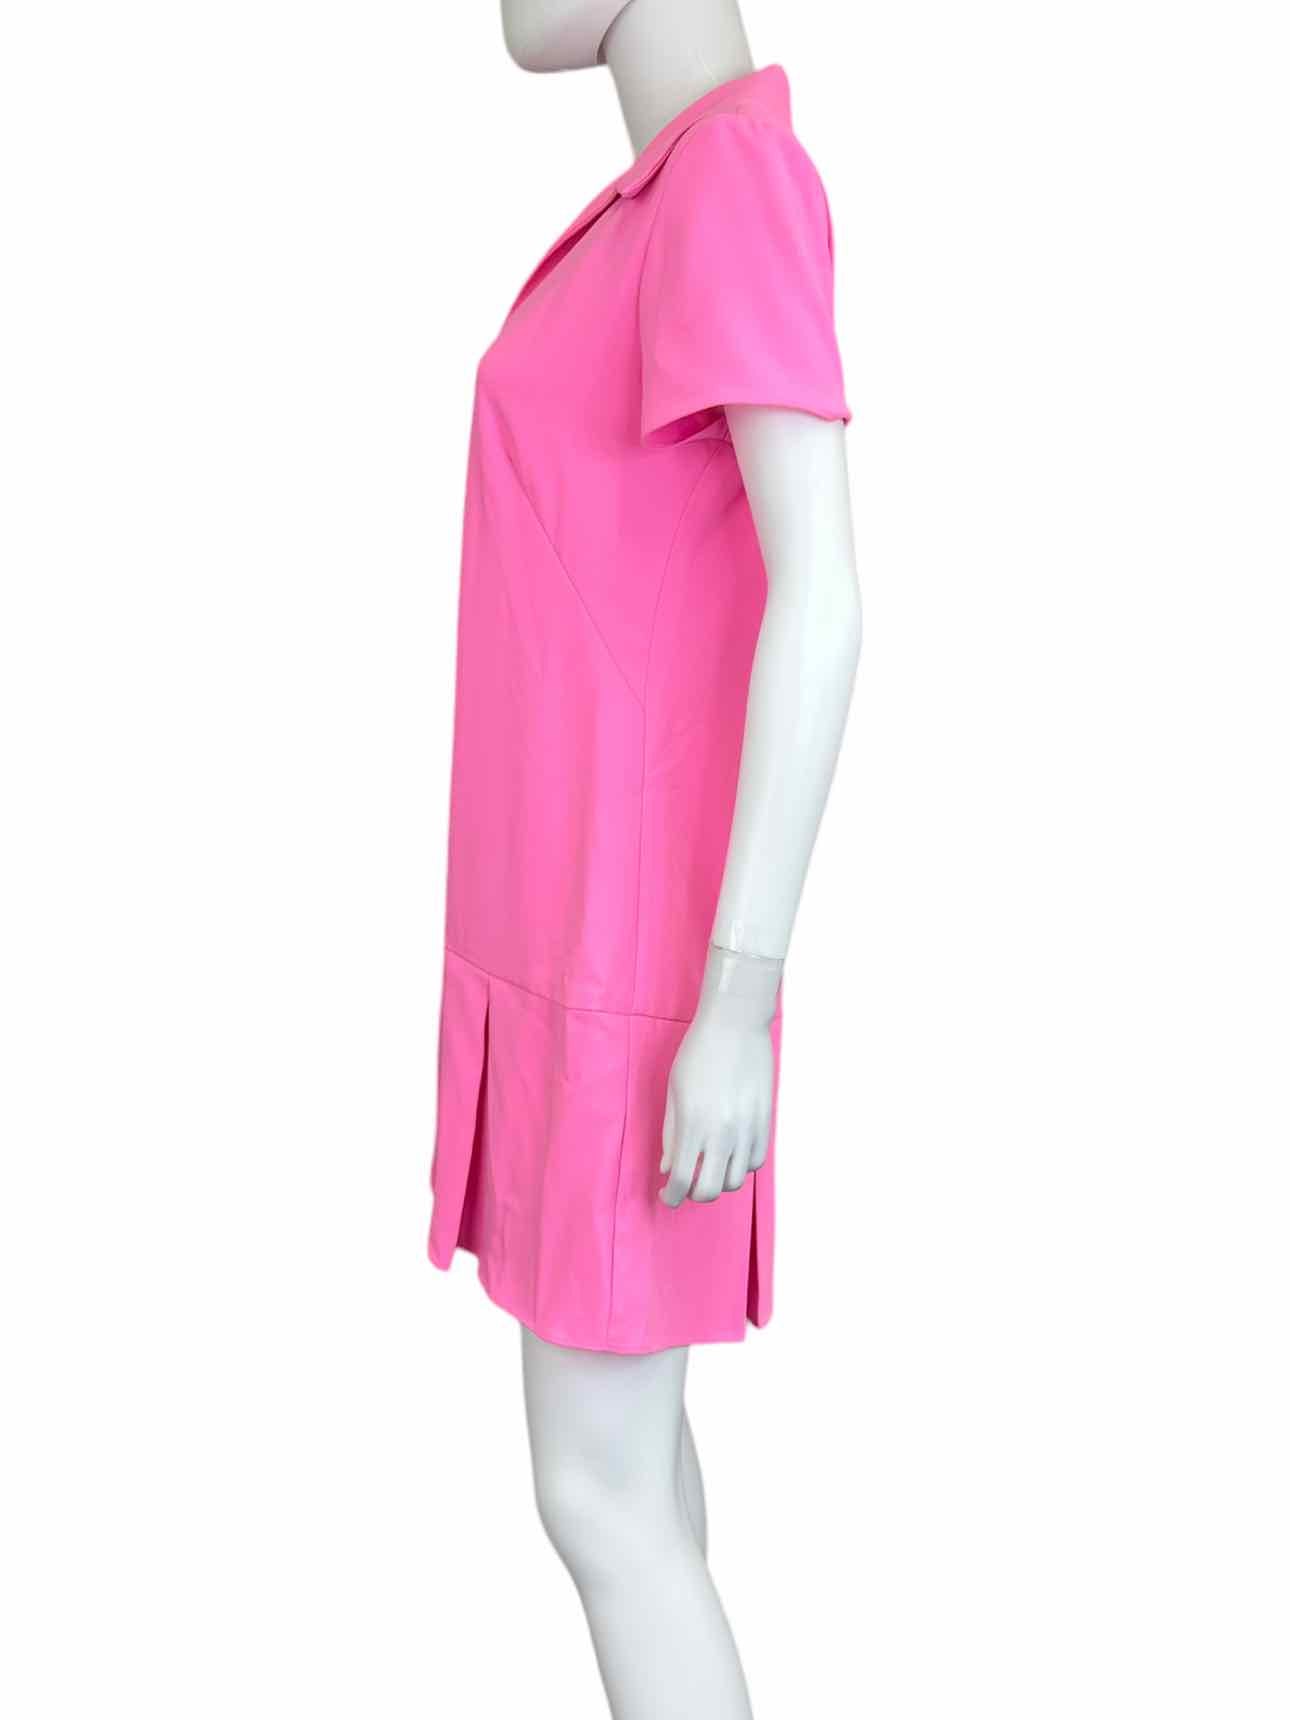 AMANDA UPRICHARD NWT Pink Dress Size M